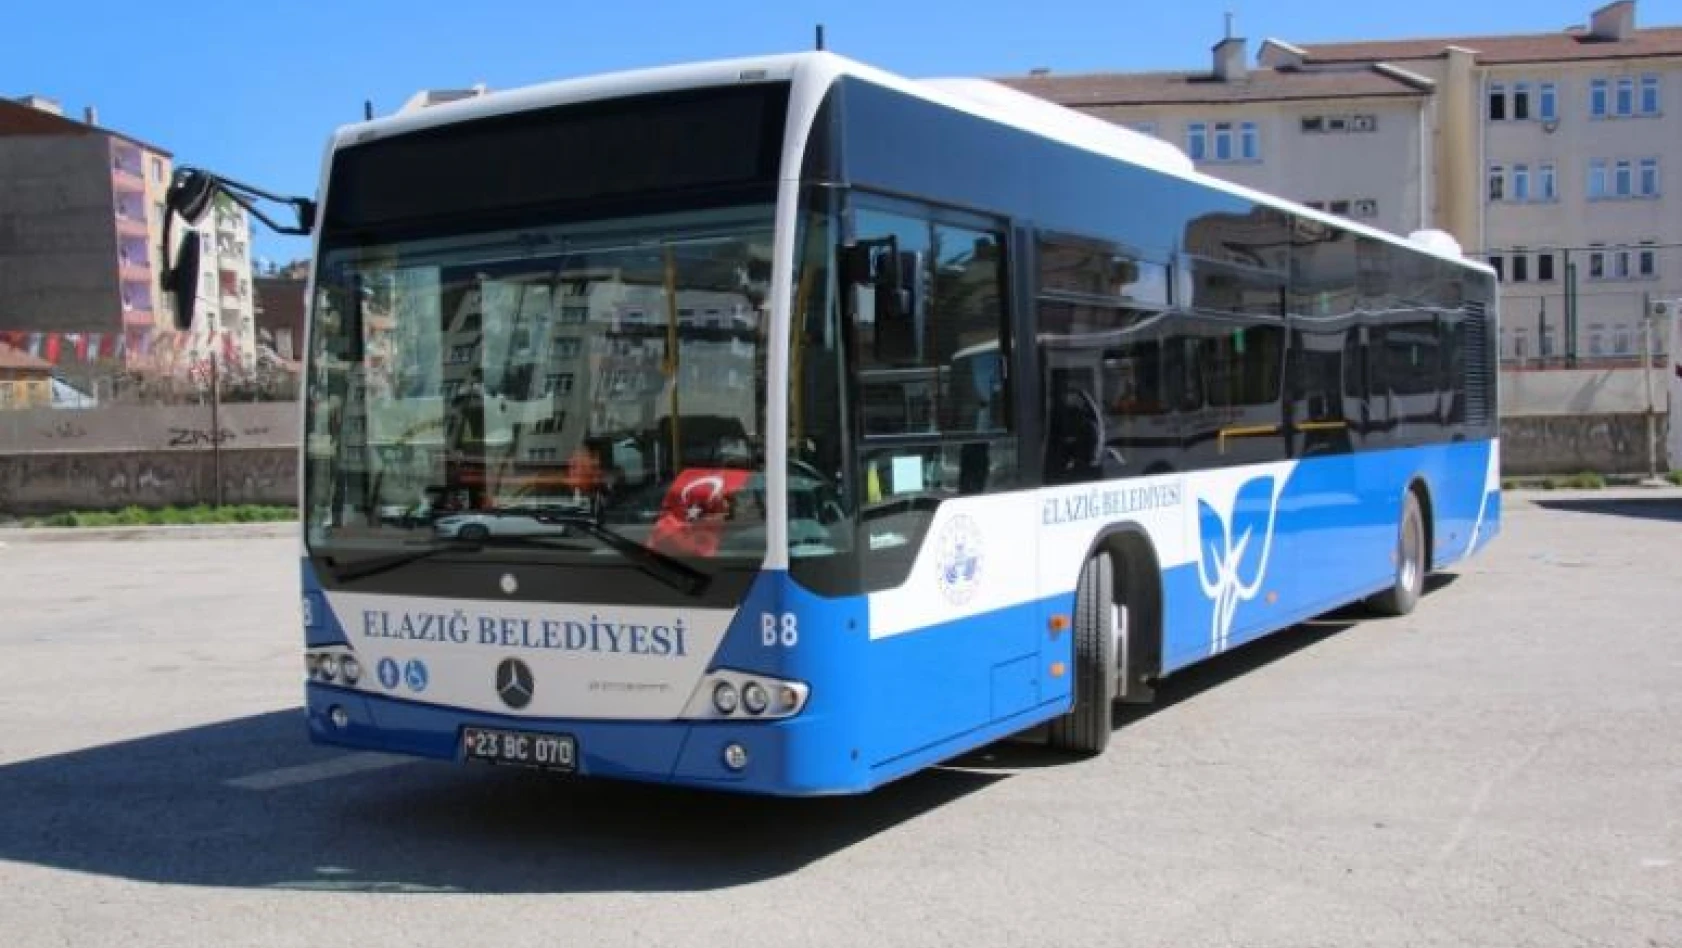 Elazığ Belediyesi Otobüs Sefer Saatlerini Yeniden Düzenledi